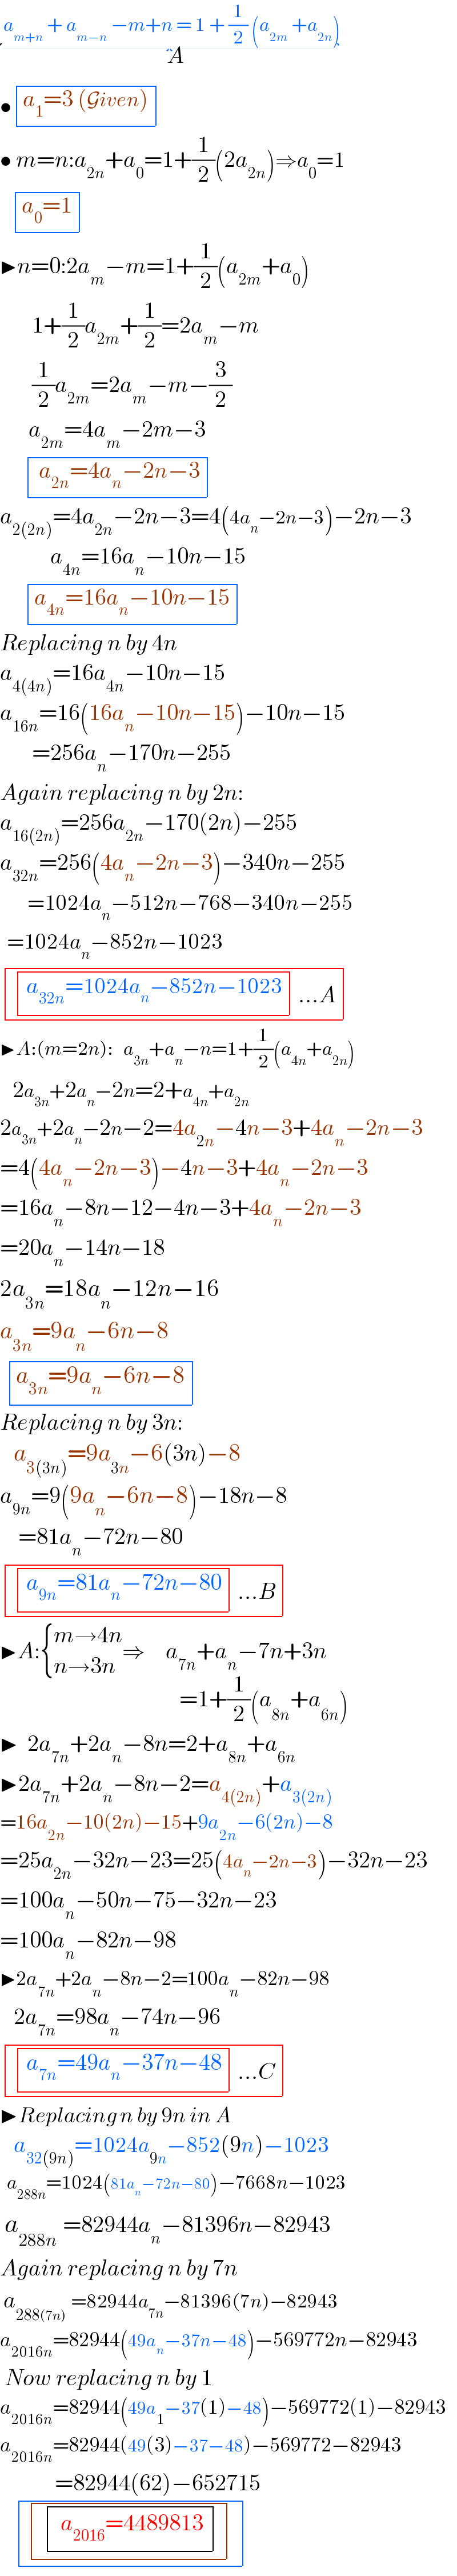  a_(m+n)  + a_(m−n)  −m+n = 1 + (1/2) (a_(2m)  +a_(2n) )_(     A^ )   • determinant (((a_1 =3 (Given))))   • m=n:a_(2n) +a_0 =1+(1/2)(2a_(2n) )⇒a_0 =1      determinant (((a_0 =1)))  ▶n=0:2a_m −m=1+(1/2)(a_(2m) +a_0 )         1+(1/2)a_(2m) +(1/2)=2a_m −m         (1/2)a_(2m) =2a_m −m−(3/2)         a_(2m) =4a_m −2m−3        determinant ((( a_(2n) =4a_n −2n−3)))  a_(2(2n)) =4a_(2n) −2n−3=4(4a_n −2n−3)−2n−3             a_(4n) =16a_n −10n−15        determinant (((a_(4n) =16a_n −10n−15)))  Replacing n by 4n  a_(4(4n)) =16a_(4n) −10n−15  a_(16n) =16(16a_n −10n−15)−10n−15         =256a_n −170n−255  Again replacing n by 2n:  a_(16(2n)) =256a_(2n) −170(2n)−255  a_(32n) =256(4a_n −2n−3)−340n−255          =1024a_n −512n−768−340n−255    =1024a_n −852n−1023   determinant ((( determinant (((a_(32n) =1024a_n −852n−1023)))...A)))  ▶A:(m=2n):   a_(3n) +a_n −n=1+(1/2)(a_(4n) +a_(2n) )     2a_(3n) +2a_n −2n=2+a_(4n) +a_(2n)    2a_(3n) +2a_n −2n−2=4a_(2n) −4n−3+4a_n −2n−3    =4(4a_n −2n−3)−4n−3+4a_n −2n−3  =16a_n −8n−12−4n−3+4a_n −2n−3  =20a_n −14n−18  2a_(3n) =18a_n −12n−16  a_(3n) =9a_n −6n−8    determinant (((a_(3n) =9a_n −6n−8)))  Replacing n by 3n:     a_(3(3n)) =9a_(3n) −6(3n)−8  a_(9n) =9(9a_n −6n−8)−18n−8      =81a_n −72n−80   determinant ((( determinant (((a_(9n) =81a_n −72n−80)))...B)))  ▶A: { ((m→4n)),((n→3n)) :}⇒a_(7n) +a_n −7n+3n_(               =1+(1/2)(a_(8n) +a_(6n) ))   ▶  2a_(7n) +2a_n −8n=2+a_(8n) +a_(6n)   ▶2a_(7n) +2a_n −8n−2=a_(4(2n)) +a_(3(2n))   =16a_(2n) −10(2n)−15+9a_(2n) −6(2n)−8  =25a_(2n) −32n−23=25(4a_n −2n−3)−32n−23  =100a_n −50n−75−32n−23  =100a_n −82n−98  ▶2a_(7n) +2a_n −8n−2=100a_n −82n−98     2a_(7n) =98a_n −74n−96   determinant ((( determinant (((a_(7n) =49a_n −37n−48)))...C)))  ▶Replacing n by 9n in A     a_(32(9n)) =1024a_(9n) −852(9n)−1023    a_(288n) =1024(81a_n −72n−80)−7668n−1023   a_(288n)  =82944a_n −81396n−82943  Again replacing n by 7n    a_(288(7n))  =82944a_(7n) −81396(7n)−82943  a_(2016n) =82944(49a_n −37n−48)−569772n−82943   Now replacing n by 1  a_(2016n) =82944(49a_1 −37(1)−48)−569772(1)−82943  a_(2016n) =82944(49(3)−37−48)−569772−82943              =82944(62)−652715      determinant (( determinant (( determinant ((( a_(2016) =4489813)))))))  